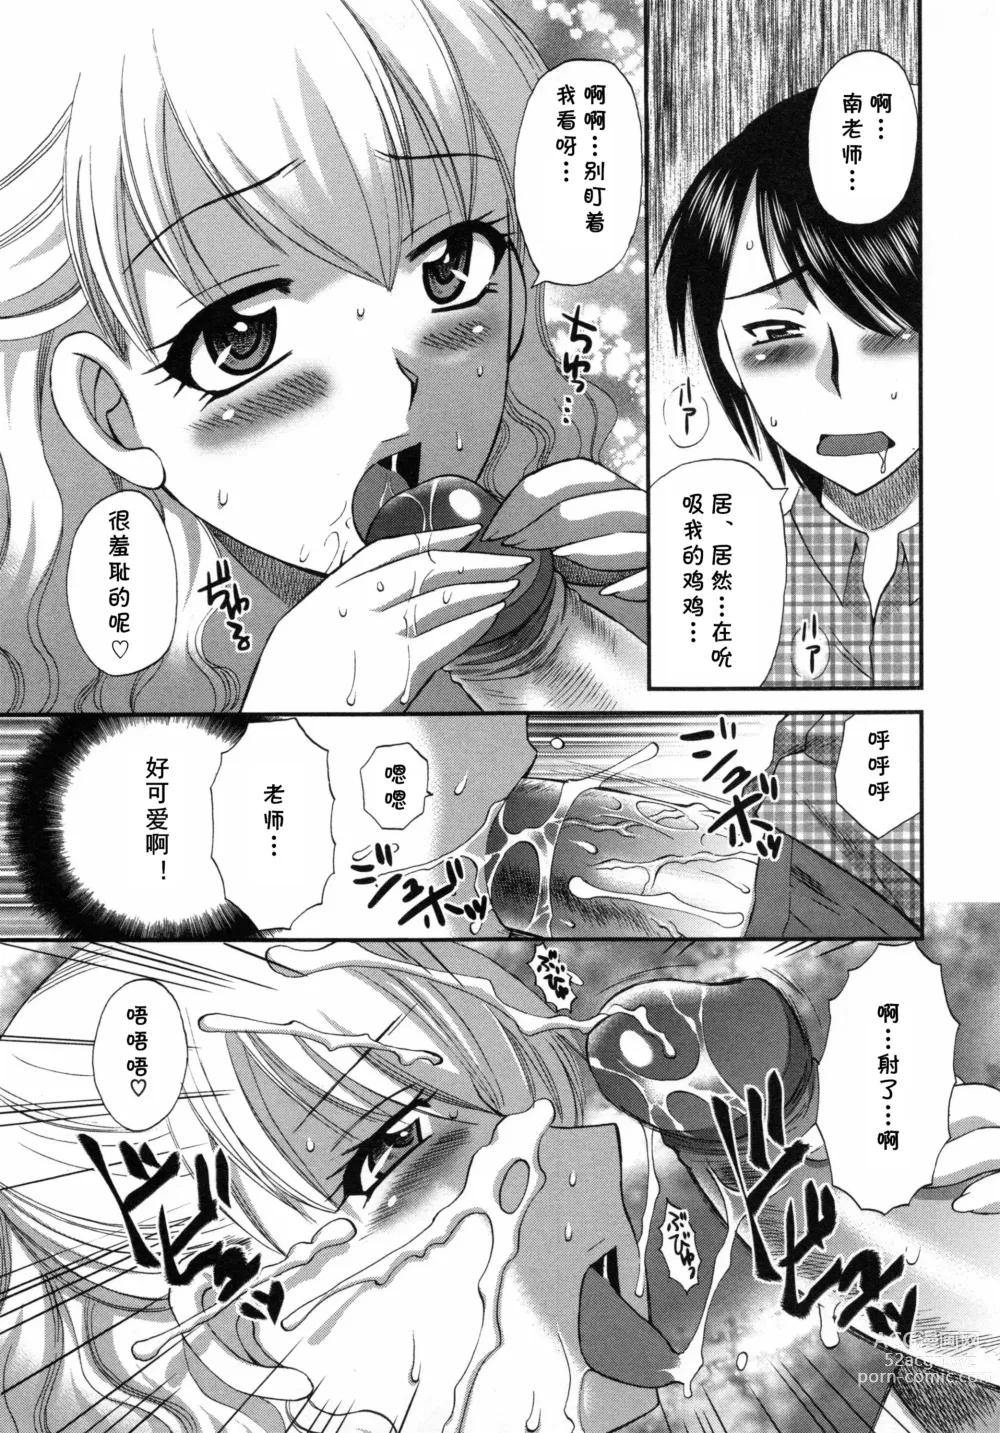 Page 9 of manga Aiyoku no Hakoniwa